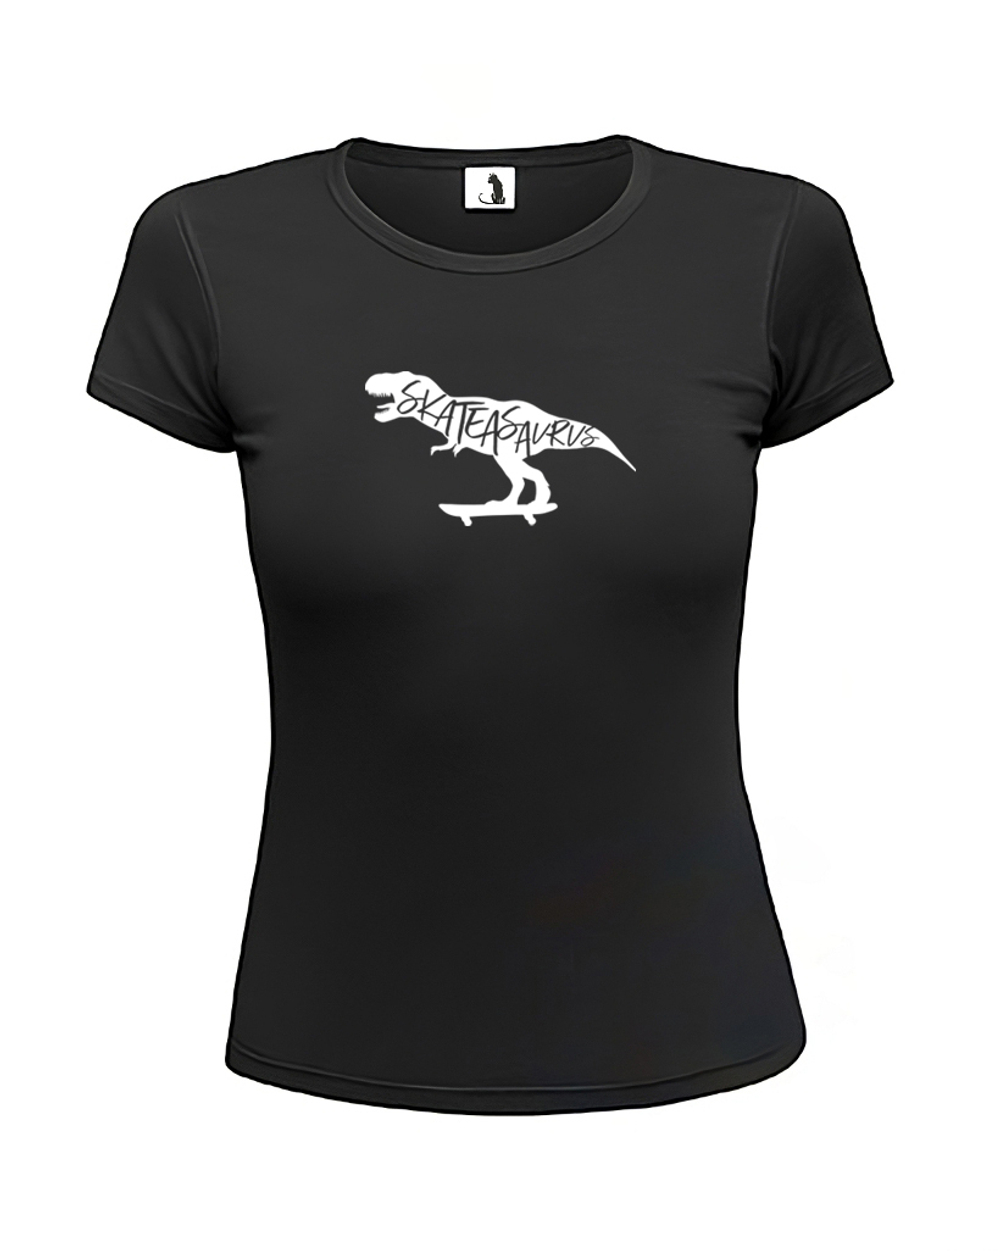 Футболка Skateasaurus женская приталенная черная с белым рисунком